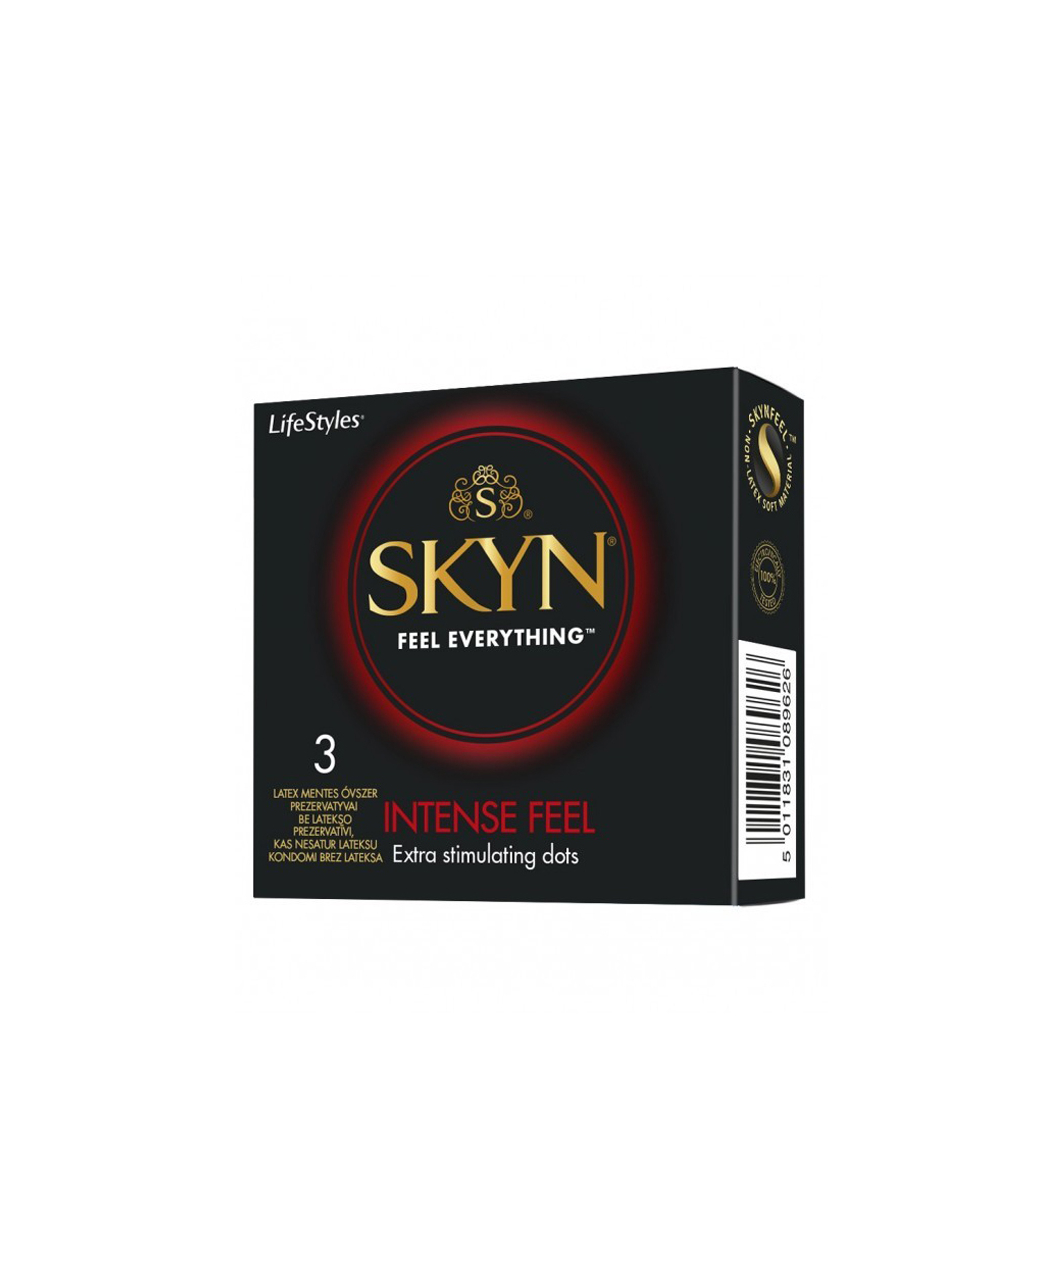 SKYN Skyn Intense Feel condoms (3 pcs)